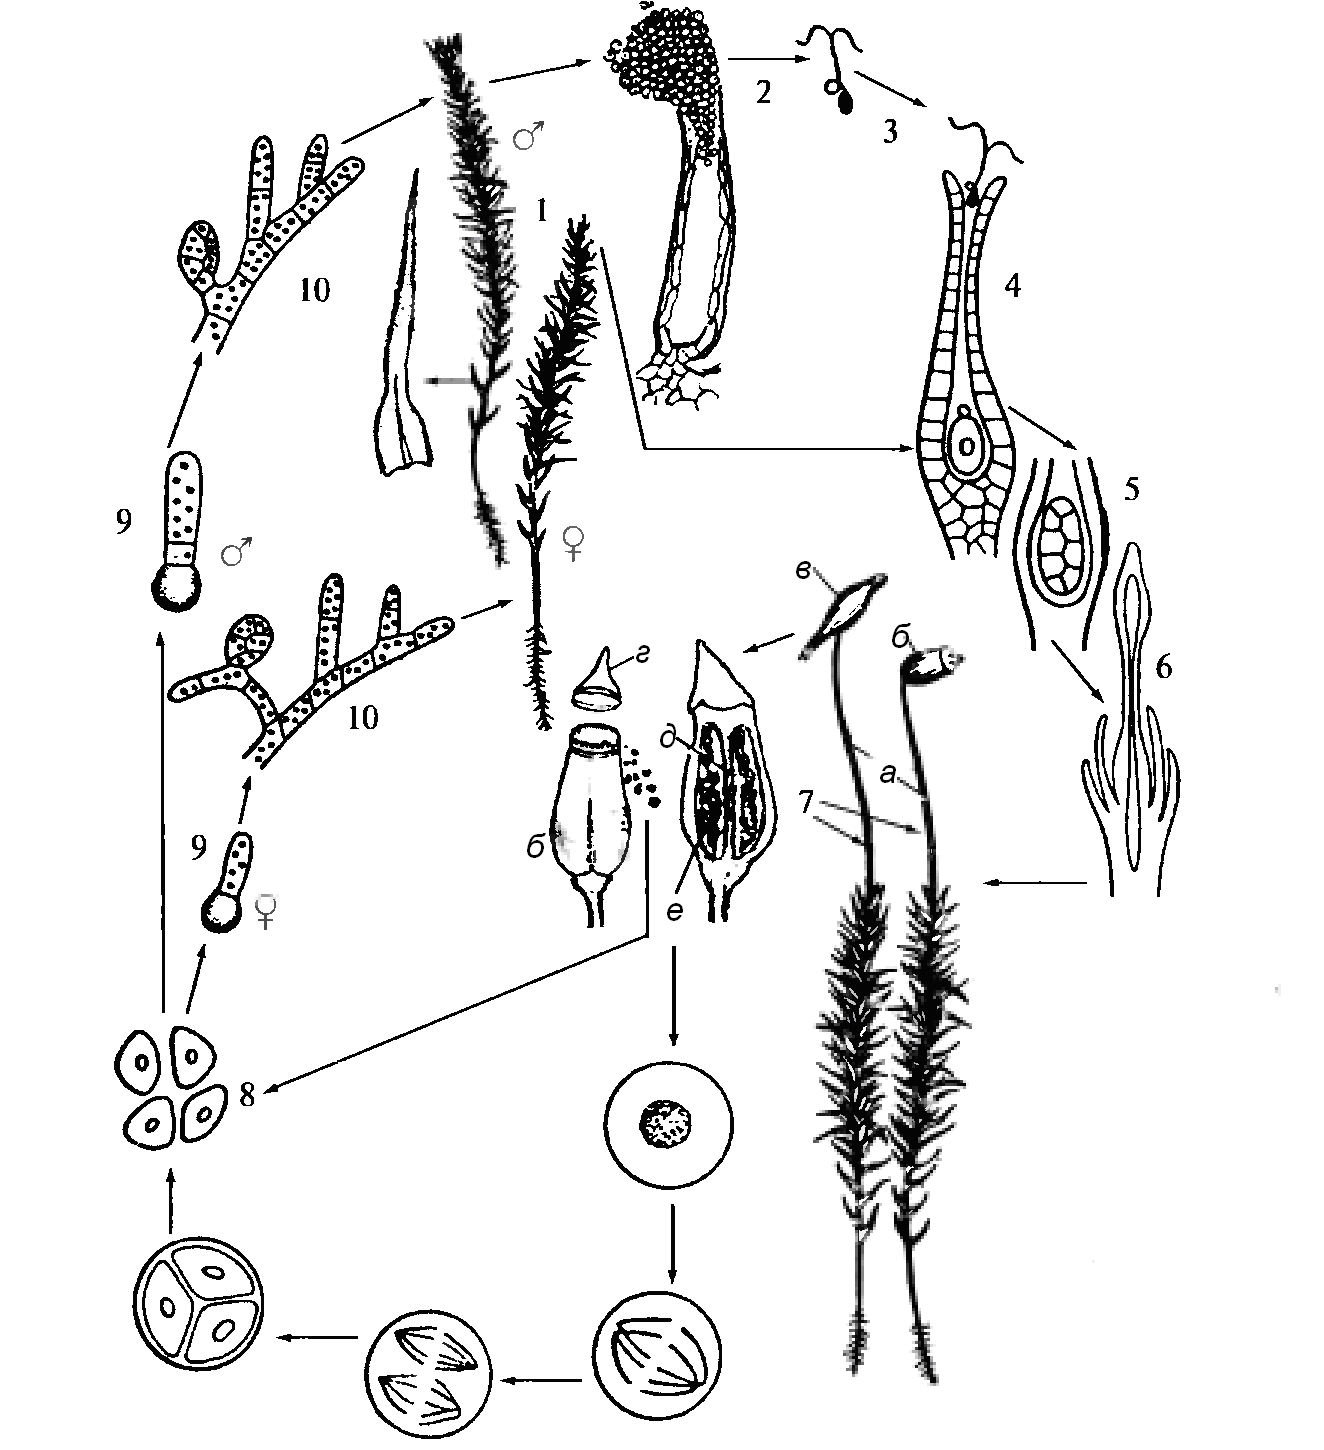 Сфагнум развитие. Жизненный цикл листостебельных мхов Кукушкин лен. Жизненный цикл мха Кукушкин лен схема. Жизненный цикл мха Кукушкина льна. Жизненный цикл развития мха Кукушкин лен.